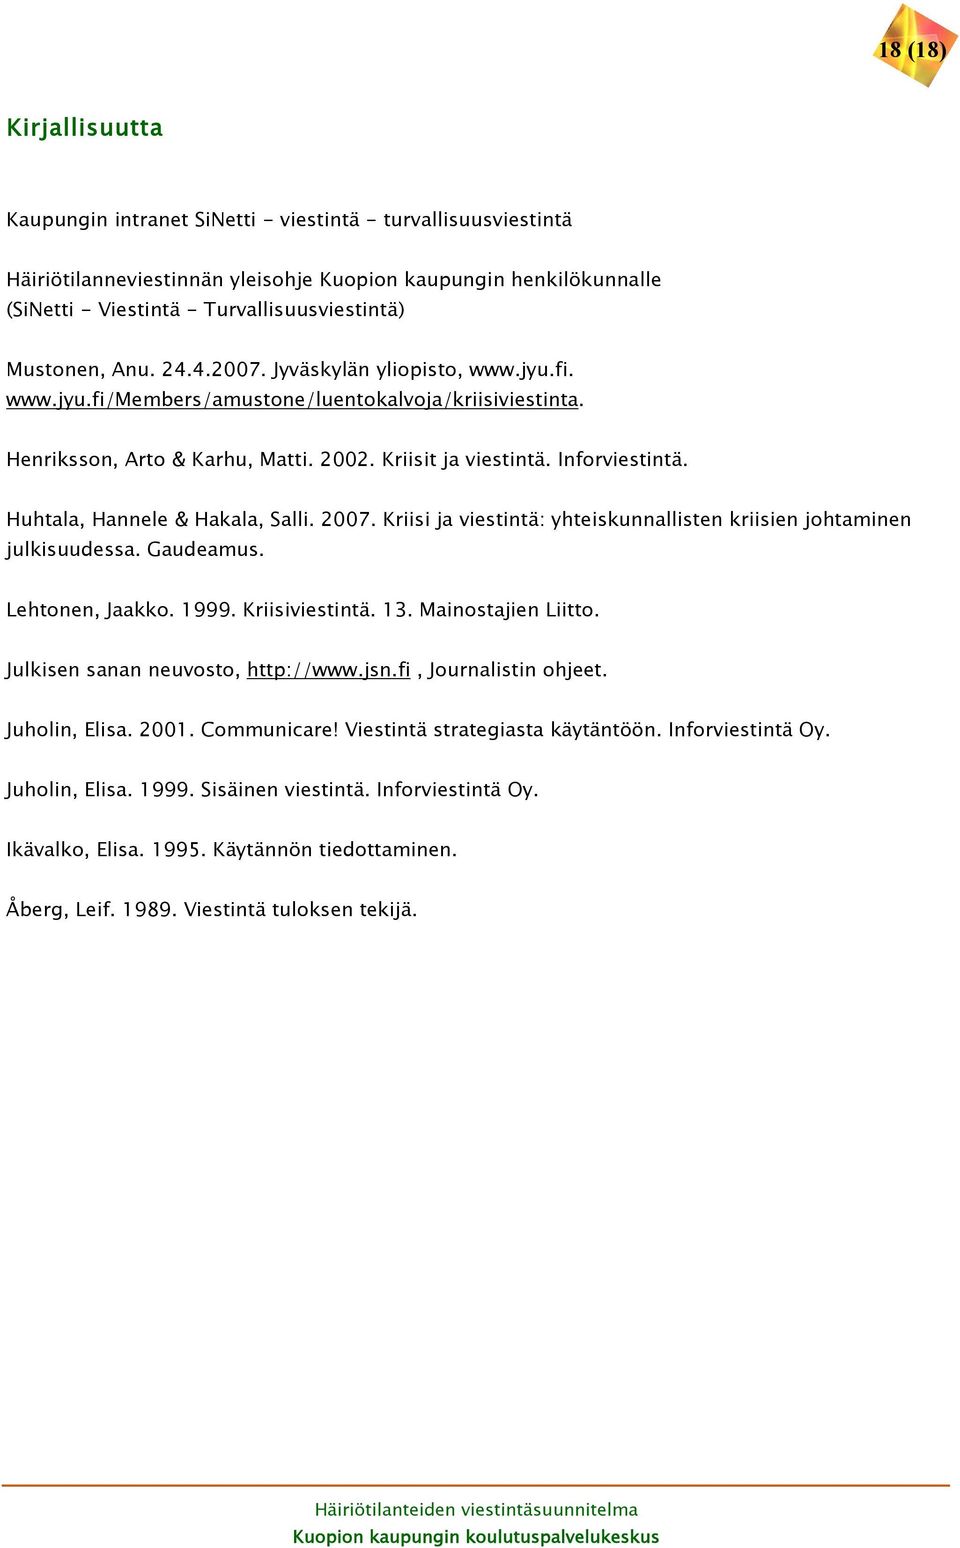 Huhtala, Hannele & Hakala, Salli. 2007. Kriisi ja viestintä: yhteiskunnallisten kriisien johtaminen julkisuudessa. Gaudeamus. Lehtonen, Jaakko. 1999. Kriisiviestintä. 13. Mainostajien Liitto.